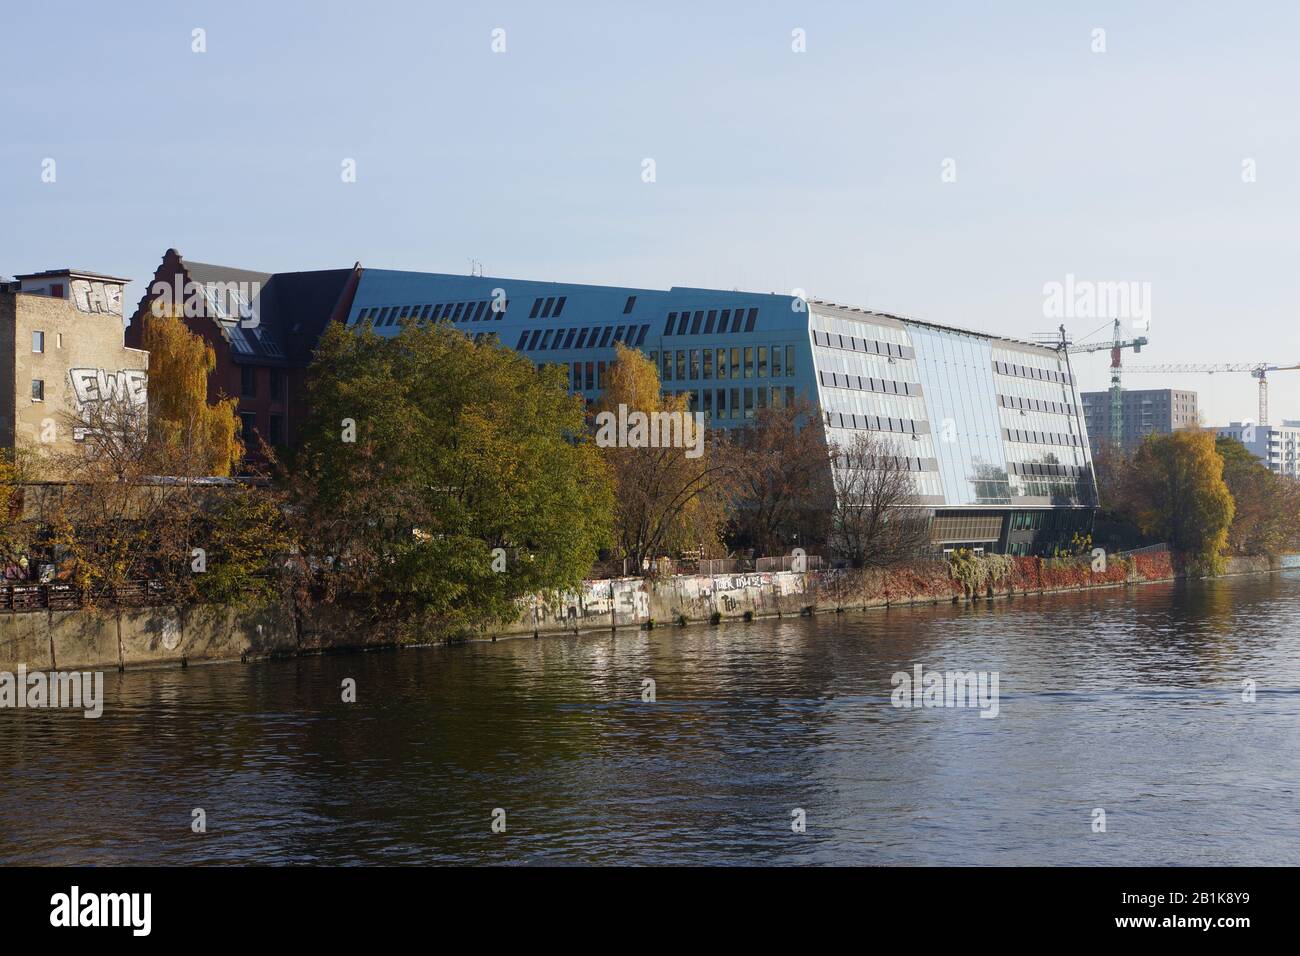 moderne Stadtentwicklung am Spreeufer von Friedrichshain, Berlin, Deutschland Stock Photo